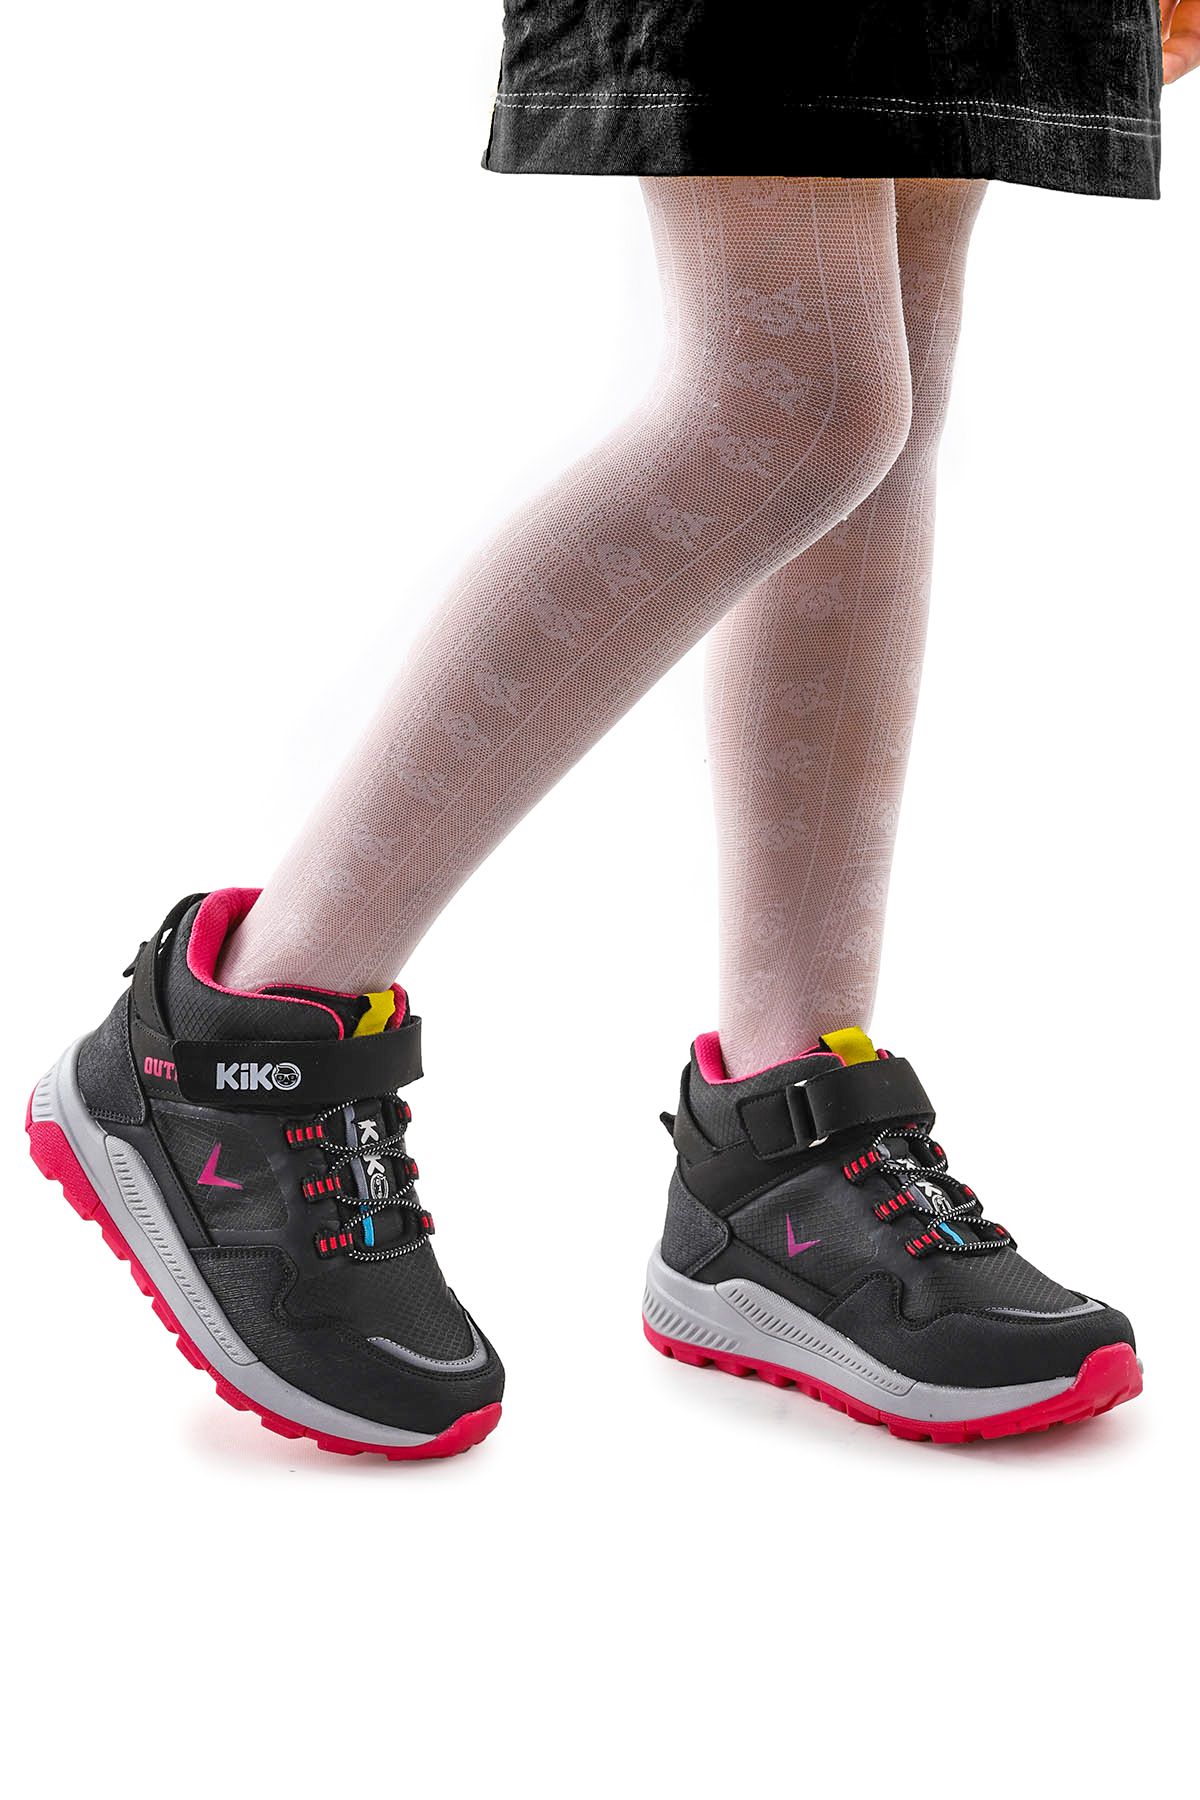 Kiko Kids Termo Taban Cırtlı Kız Çocuk Spor Bot Ayakkabı 290